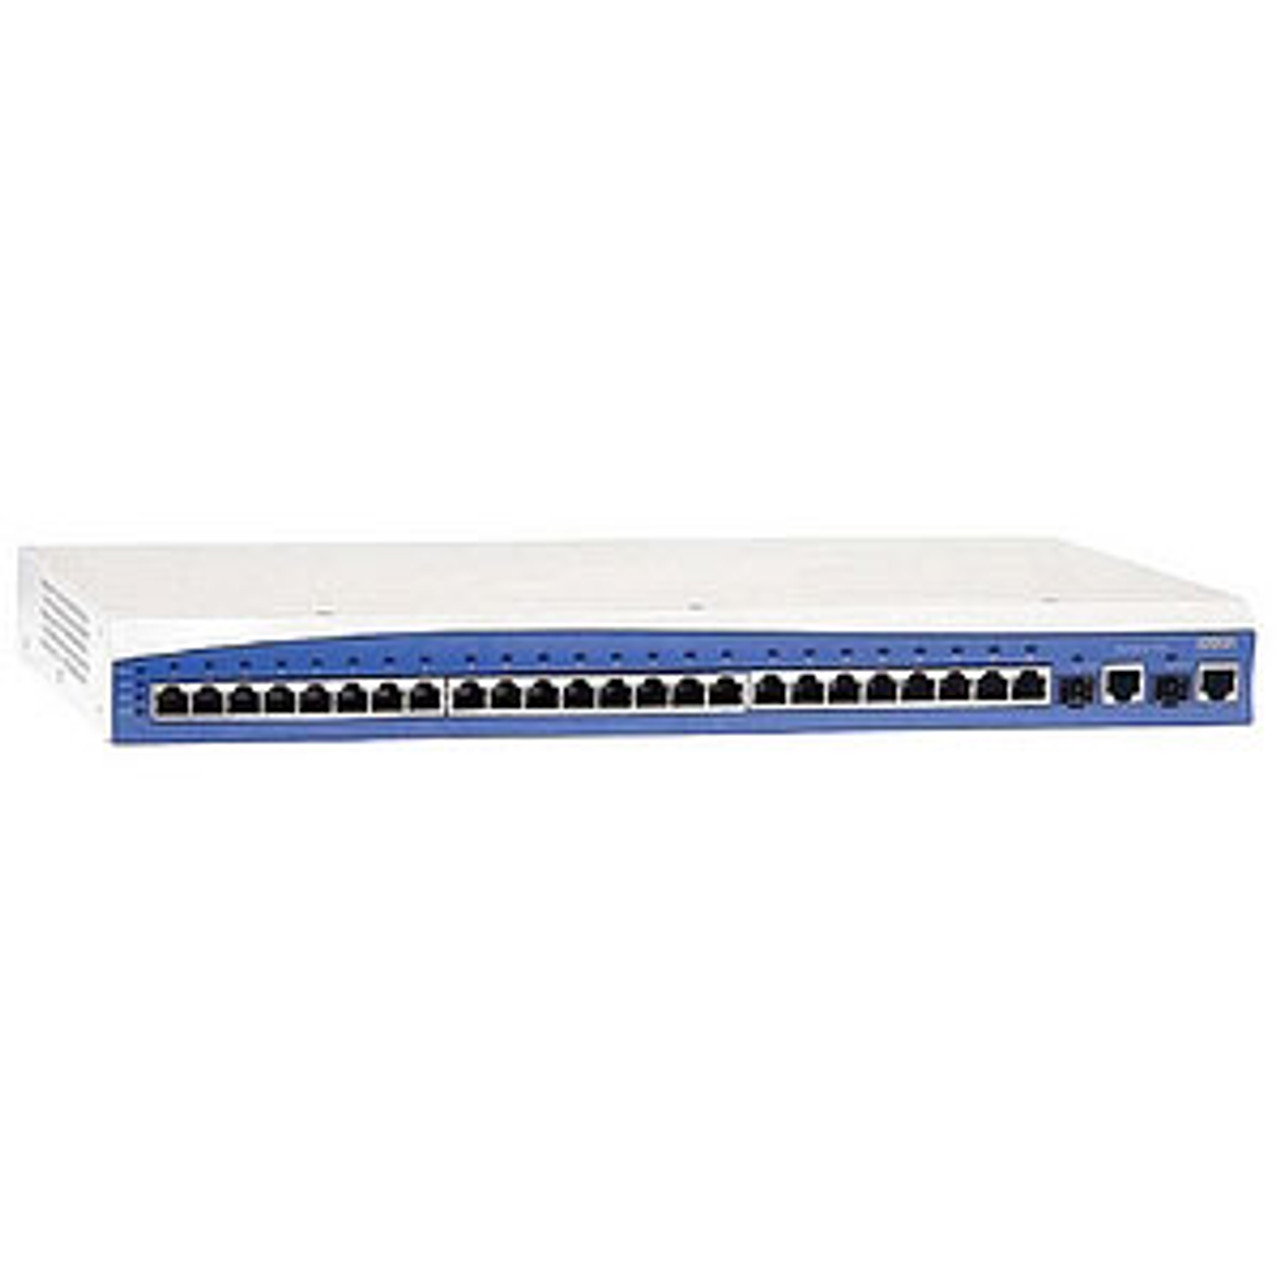 Adtran NetVanta 1335 (1700515E2) Router